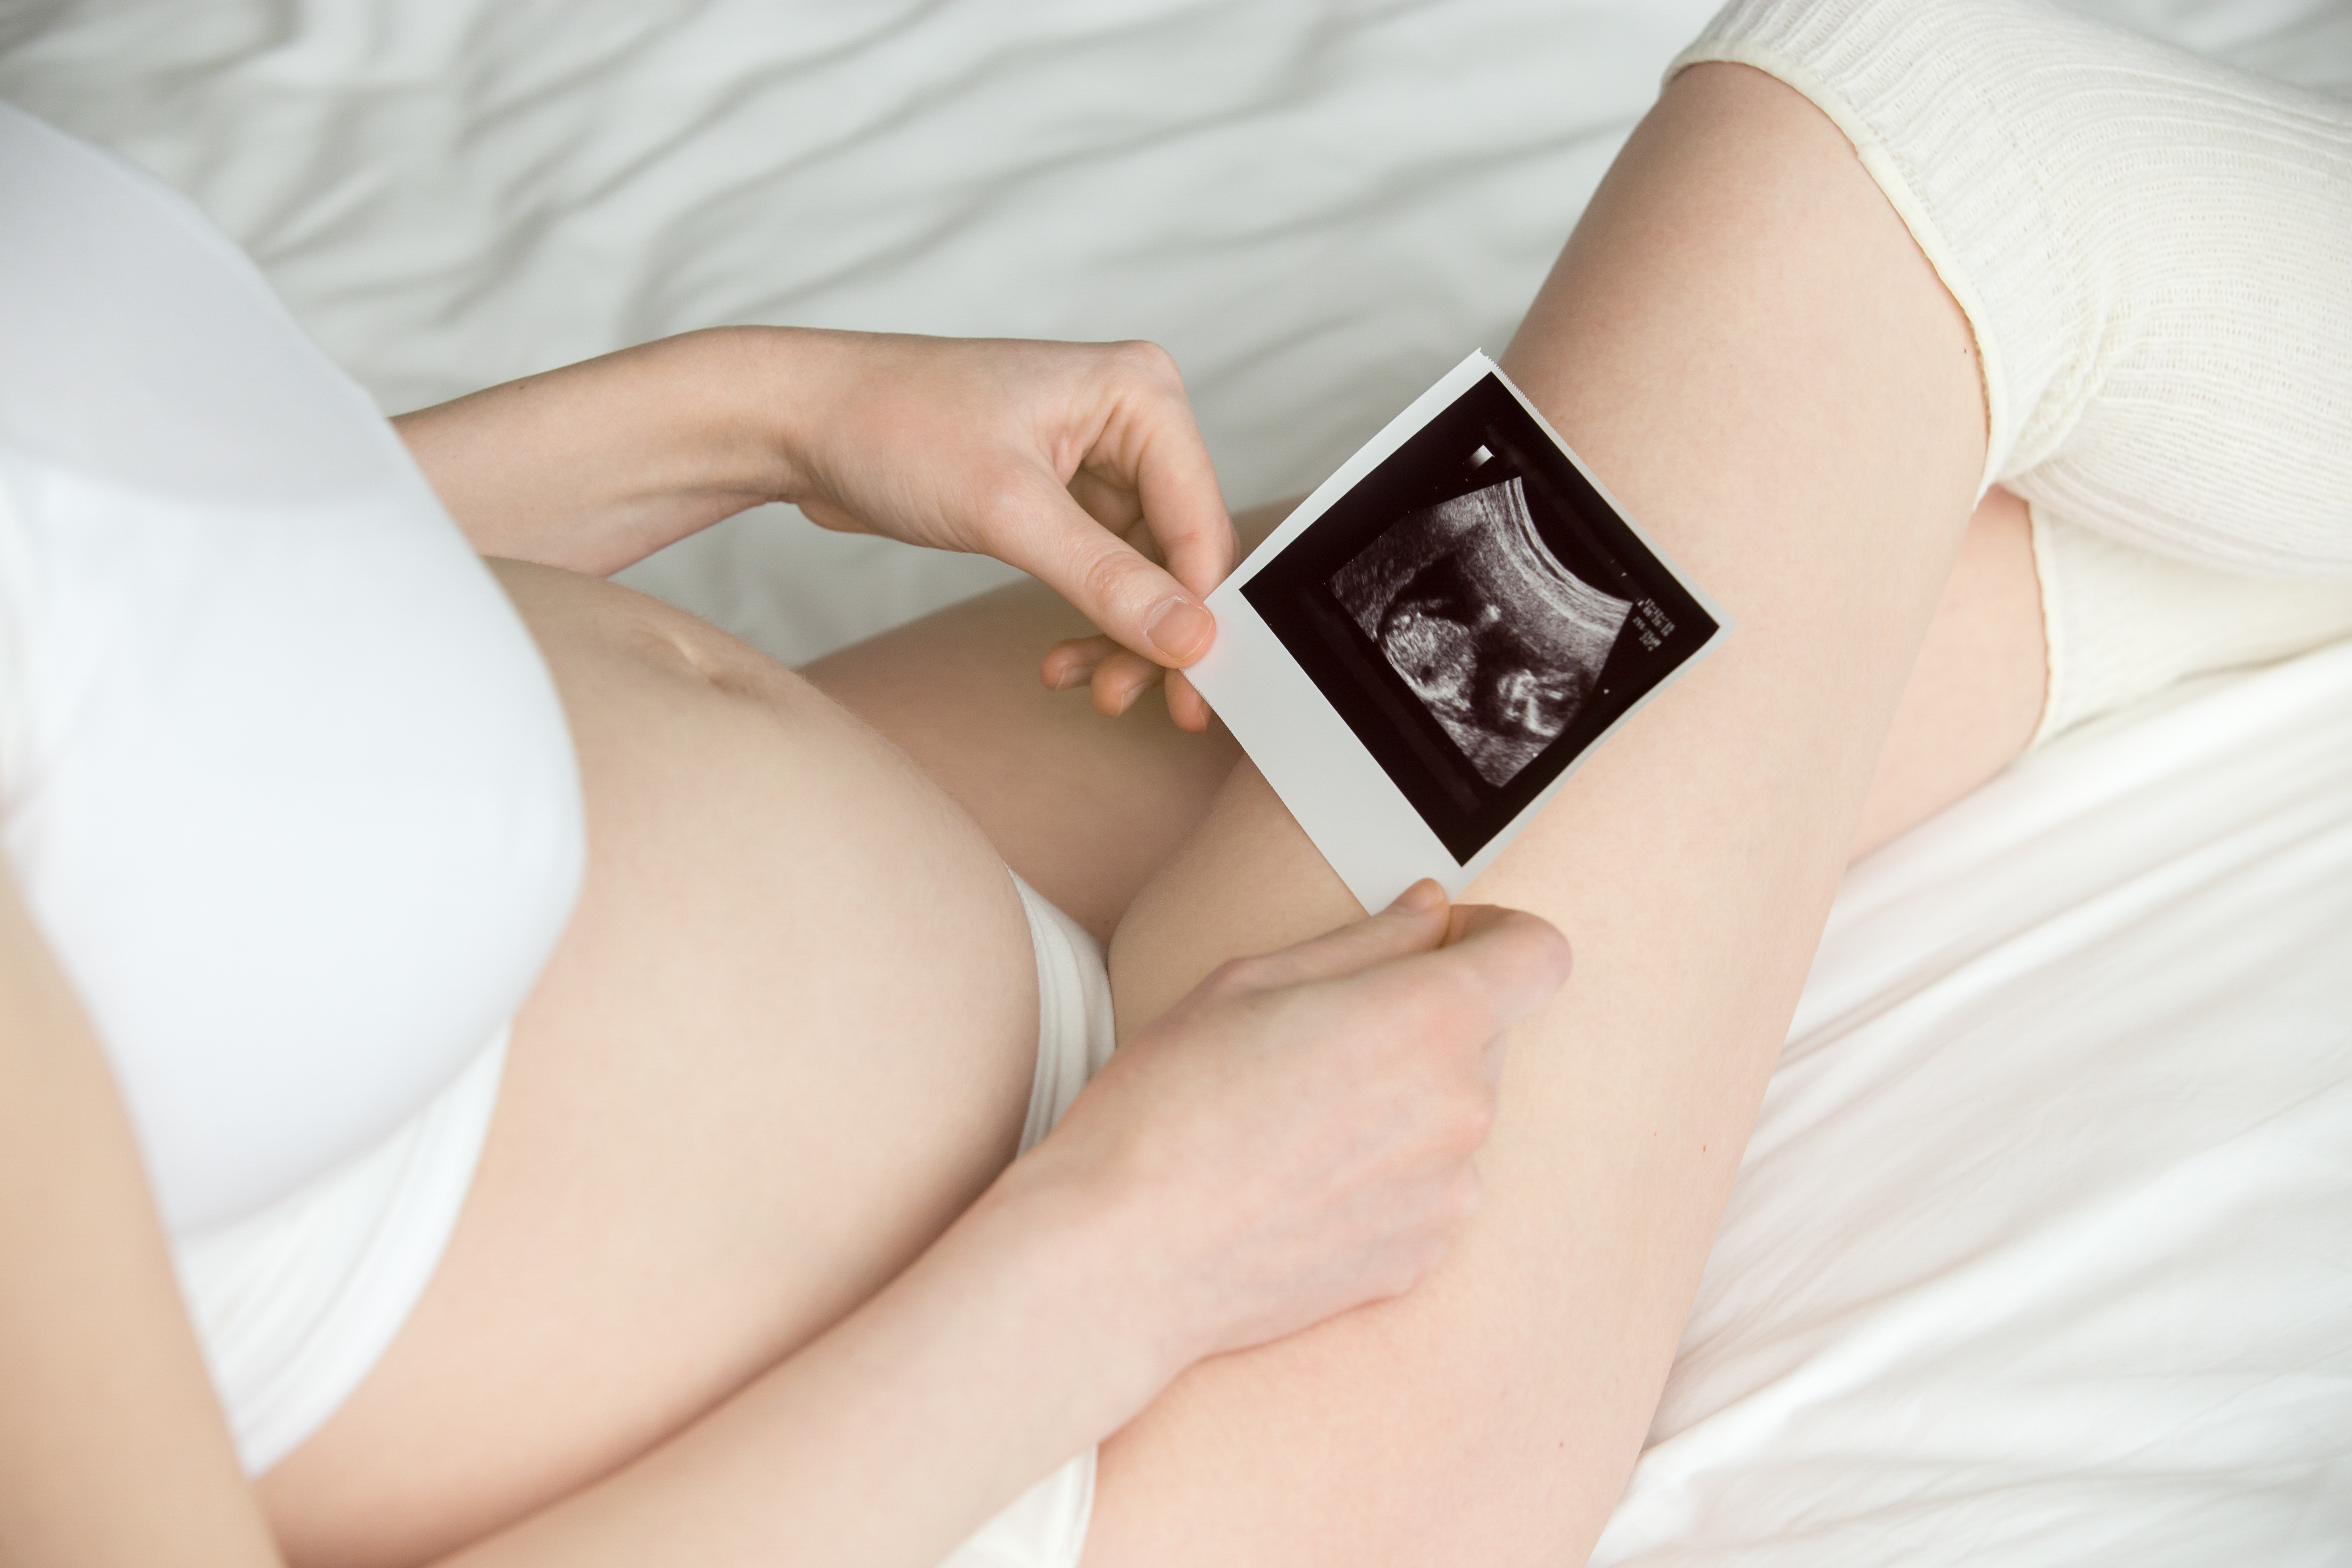 Fetal ultrasound examination